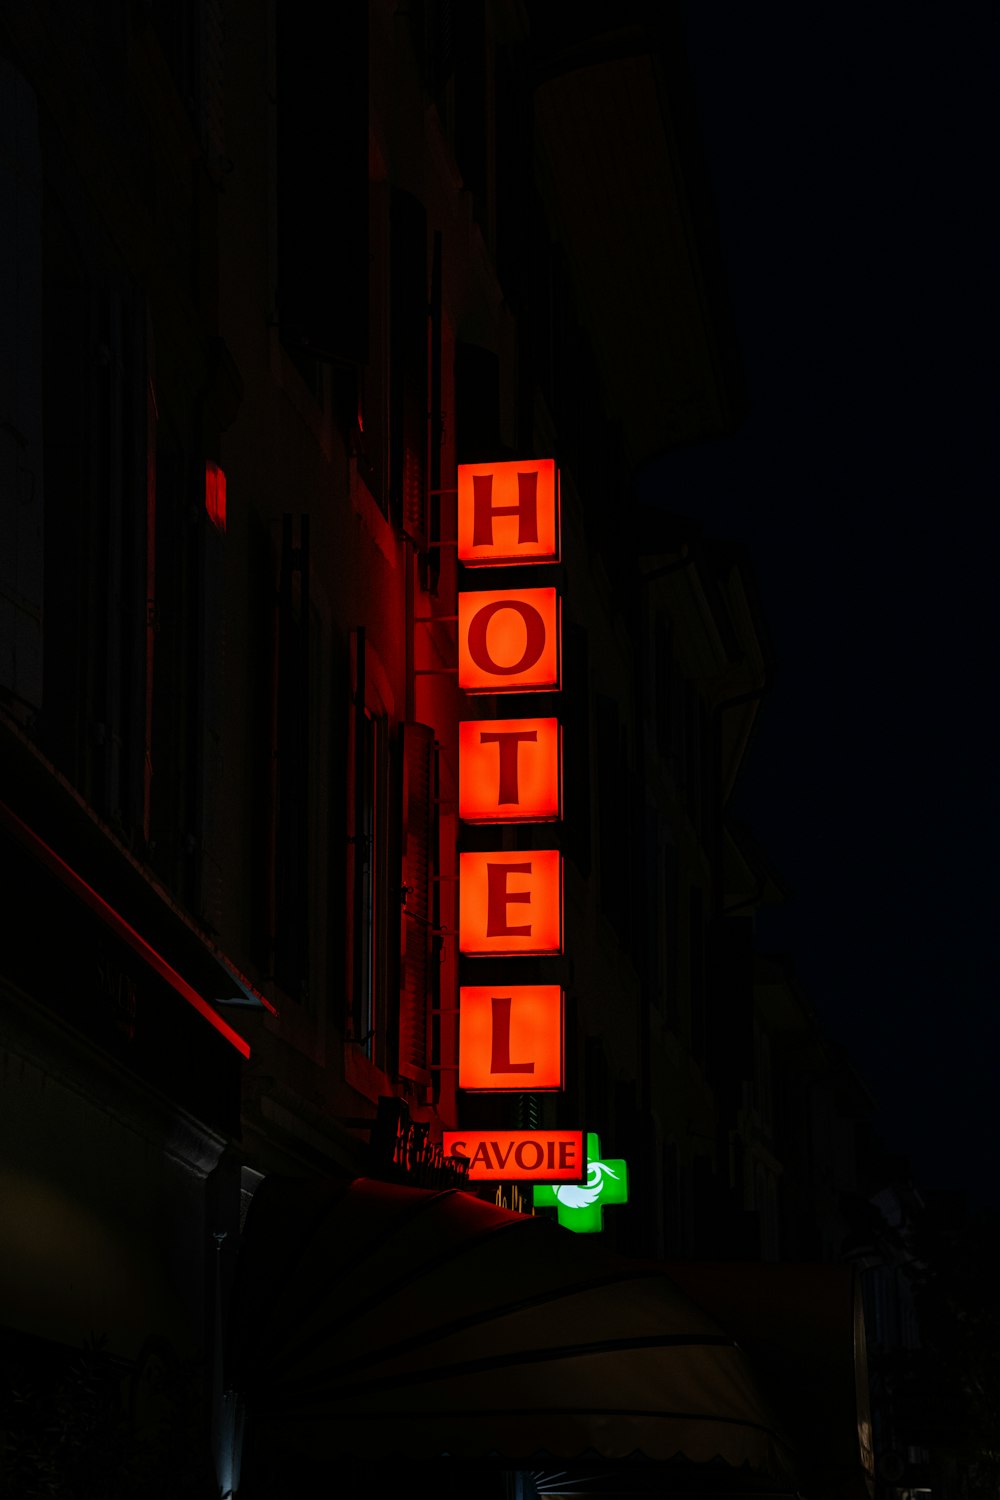 Ein Neon-Hotelschild leuchtet nachts